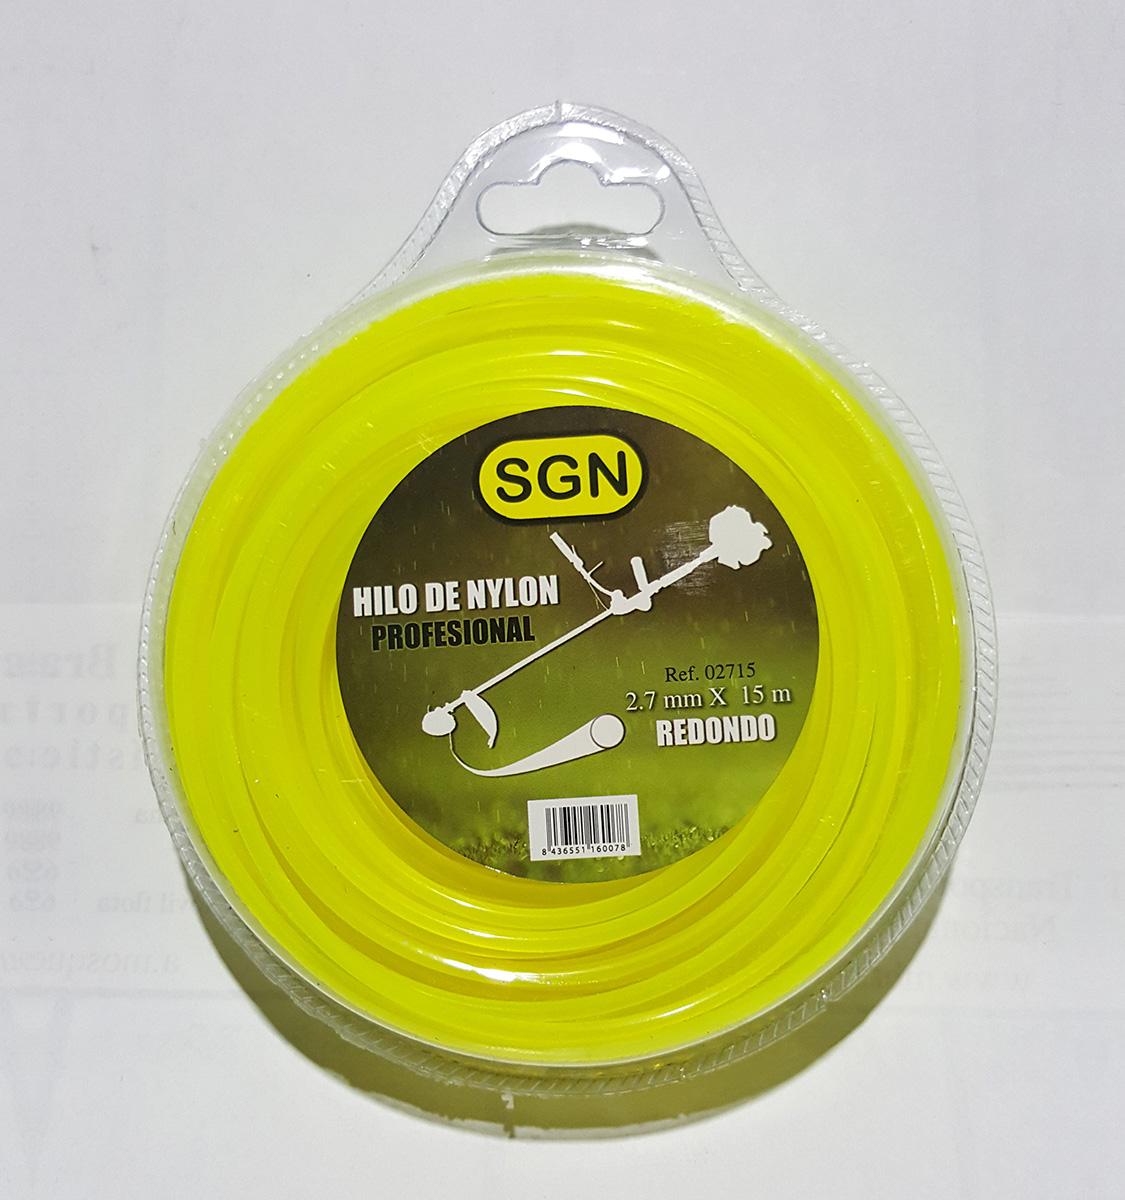 Hilo Nylon Desbroce 2,7MM x 15M, Redondo, Blister, Color amarillo